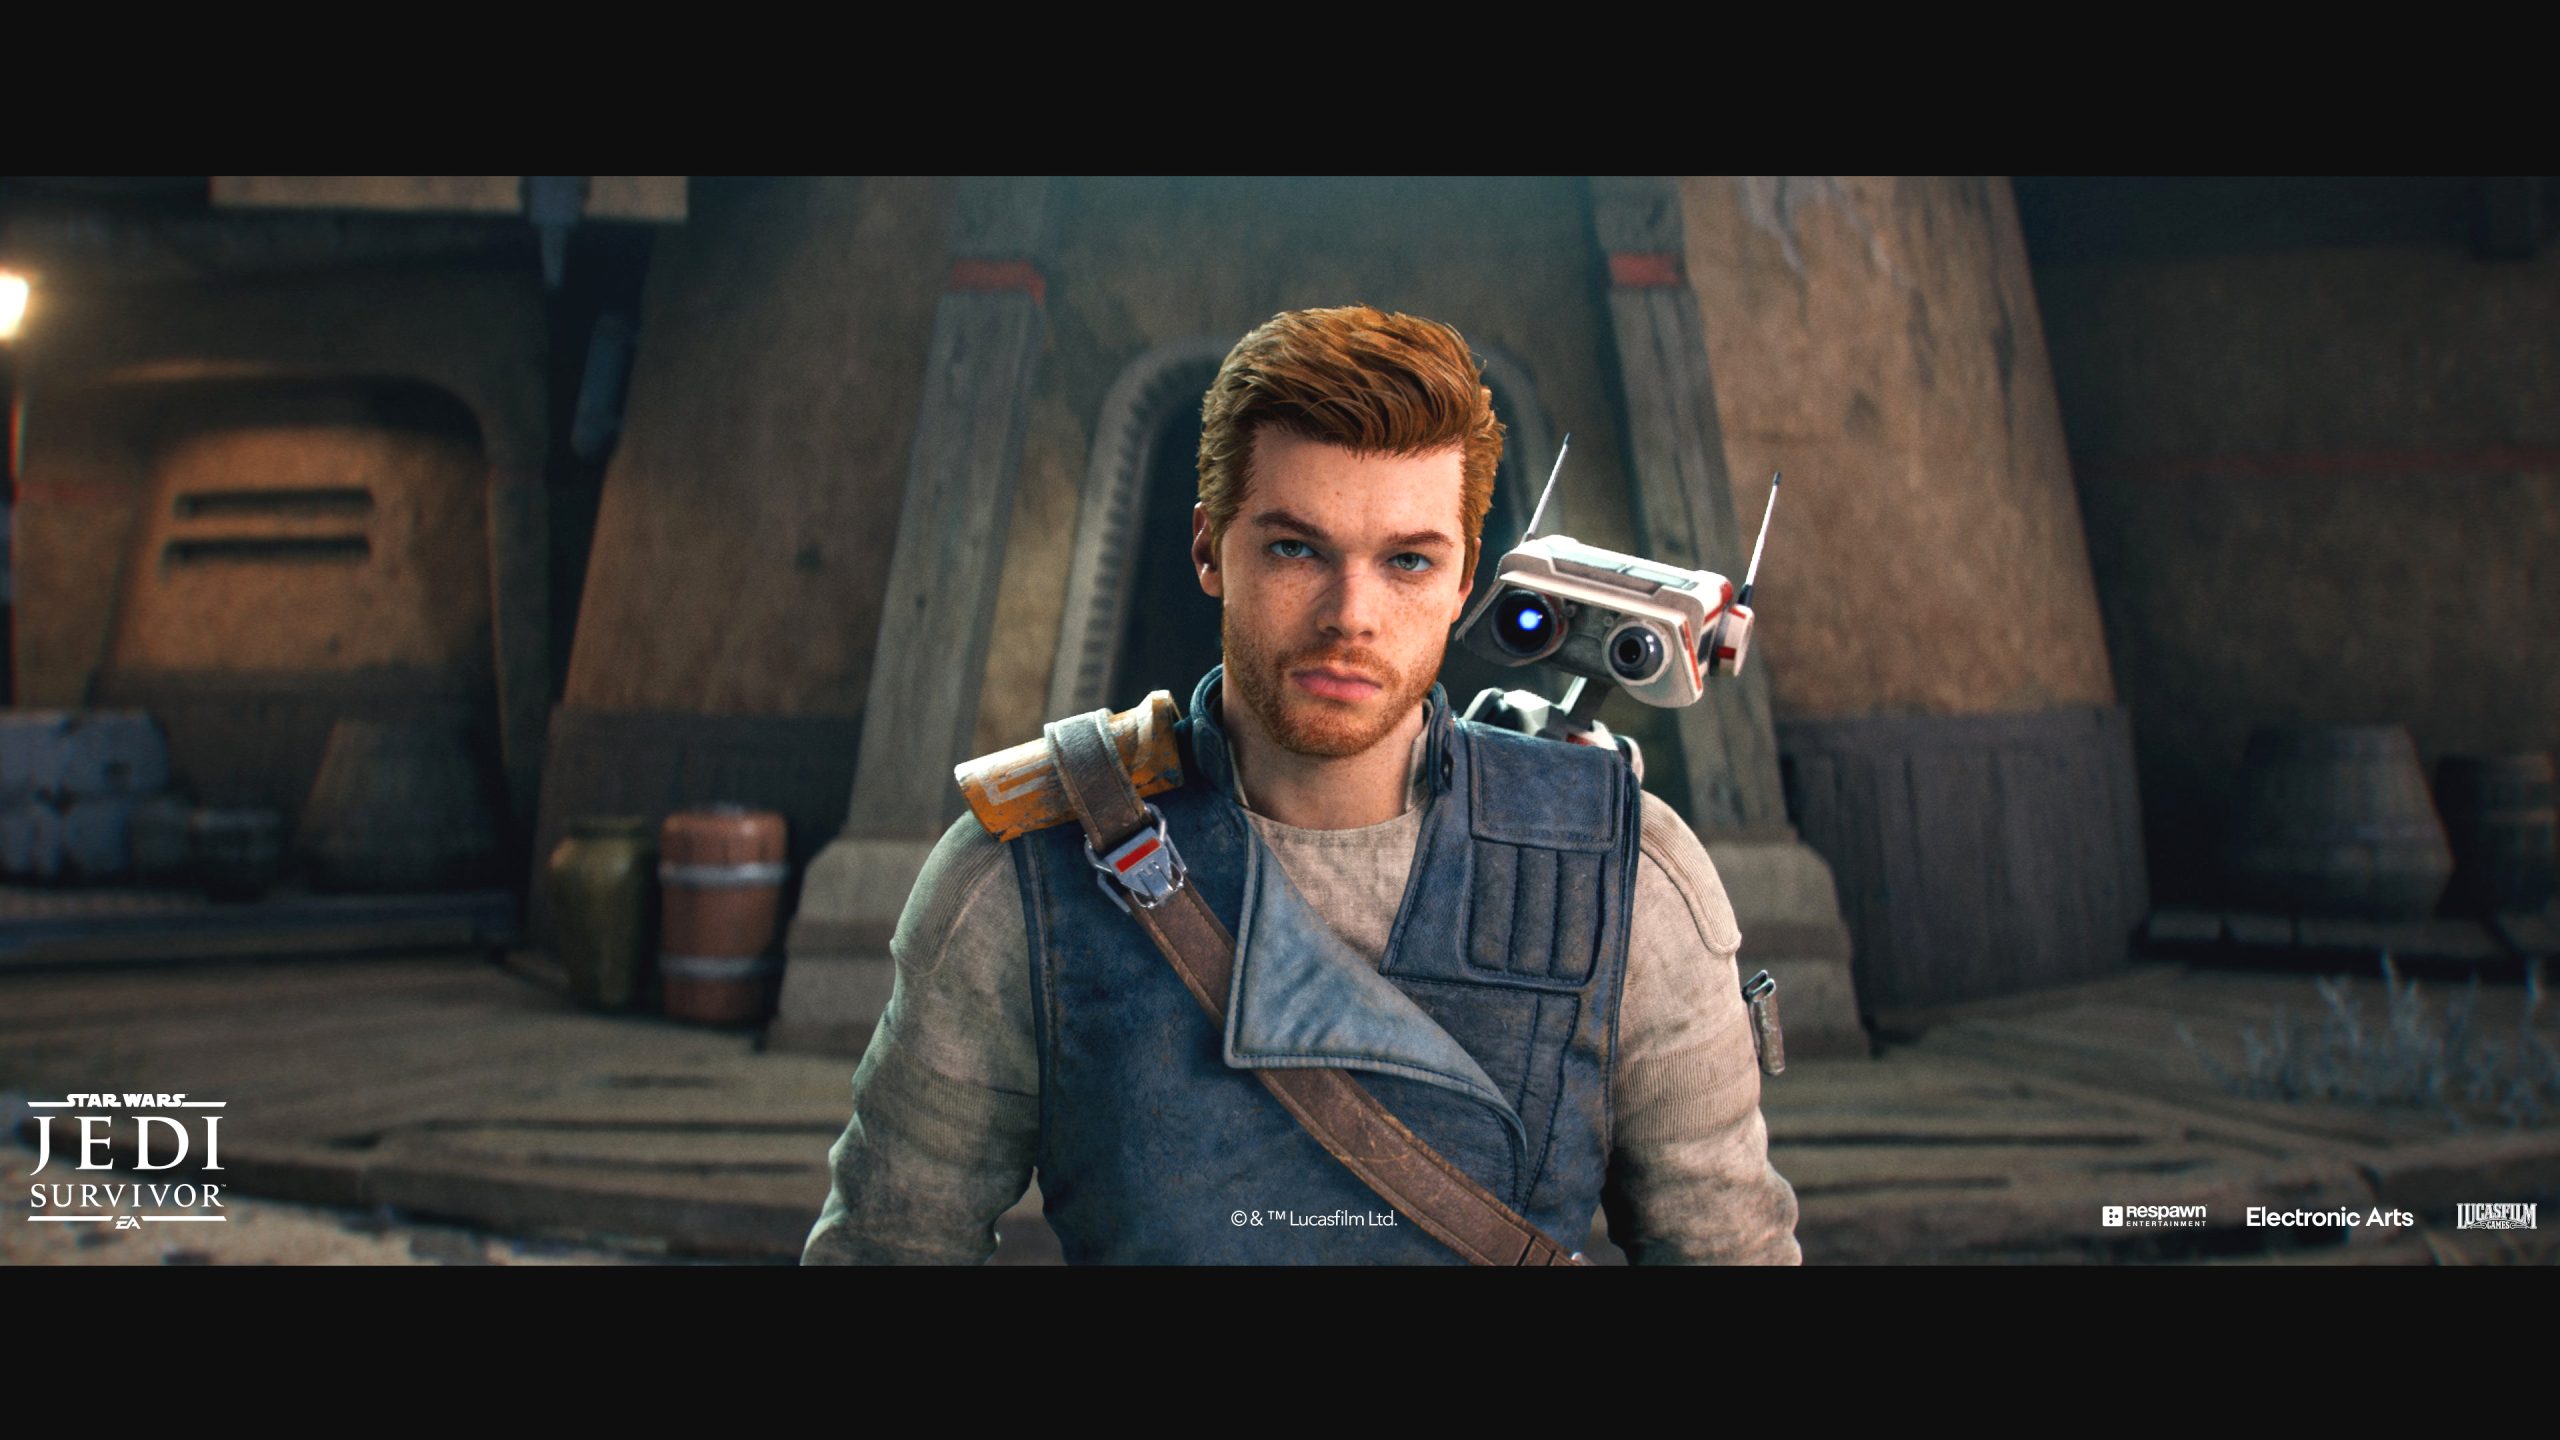 Star Wars Jedi: Survivor - new gameplay trailer shows dungeons like in Zelda